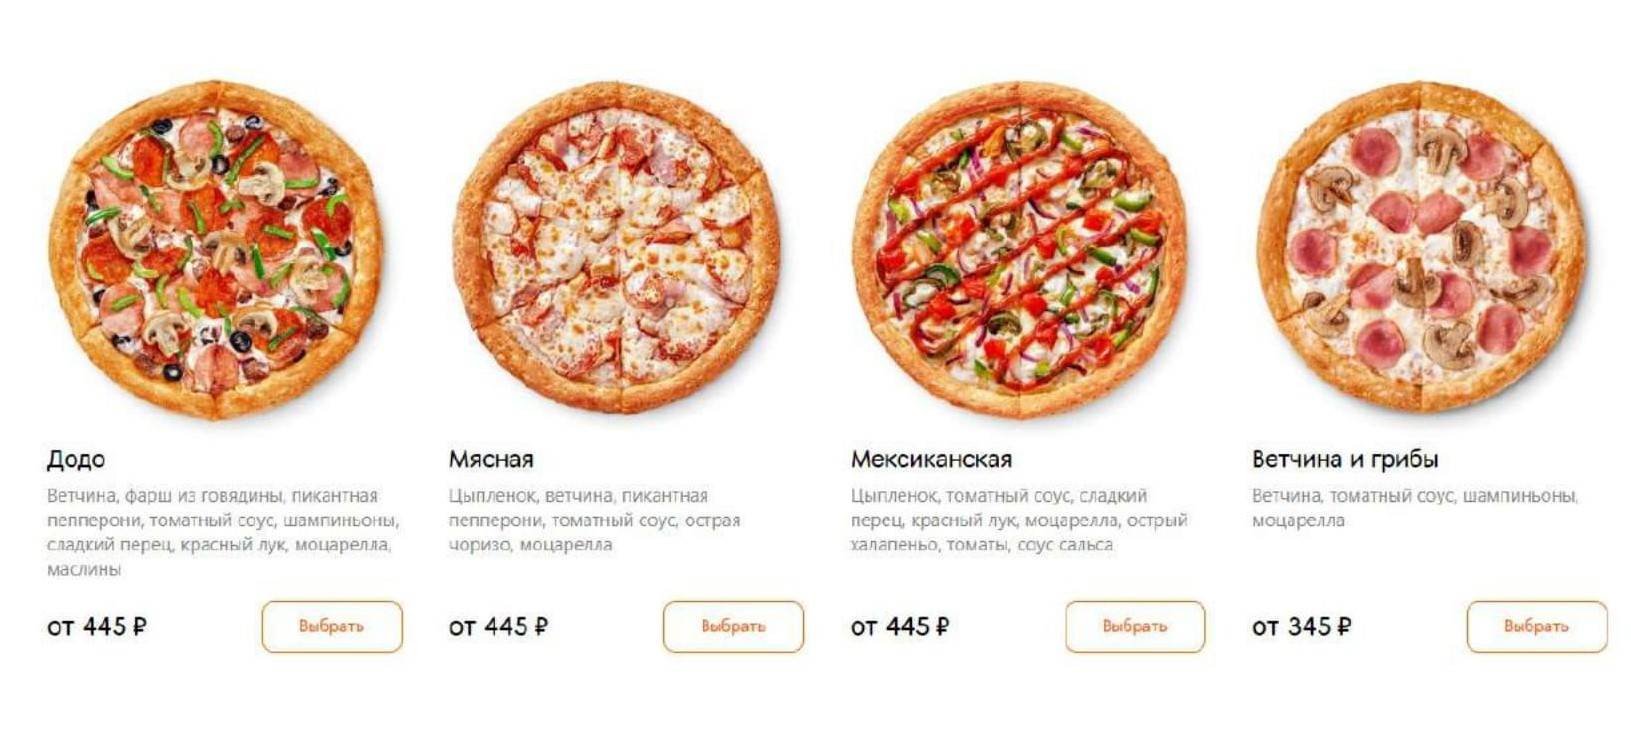 пицца додо ассортимент и цены (120) фото